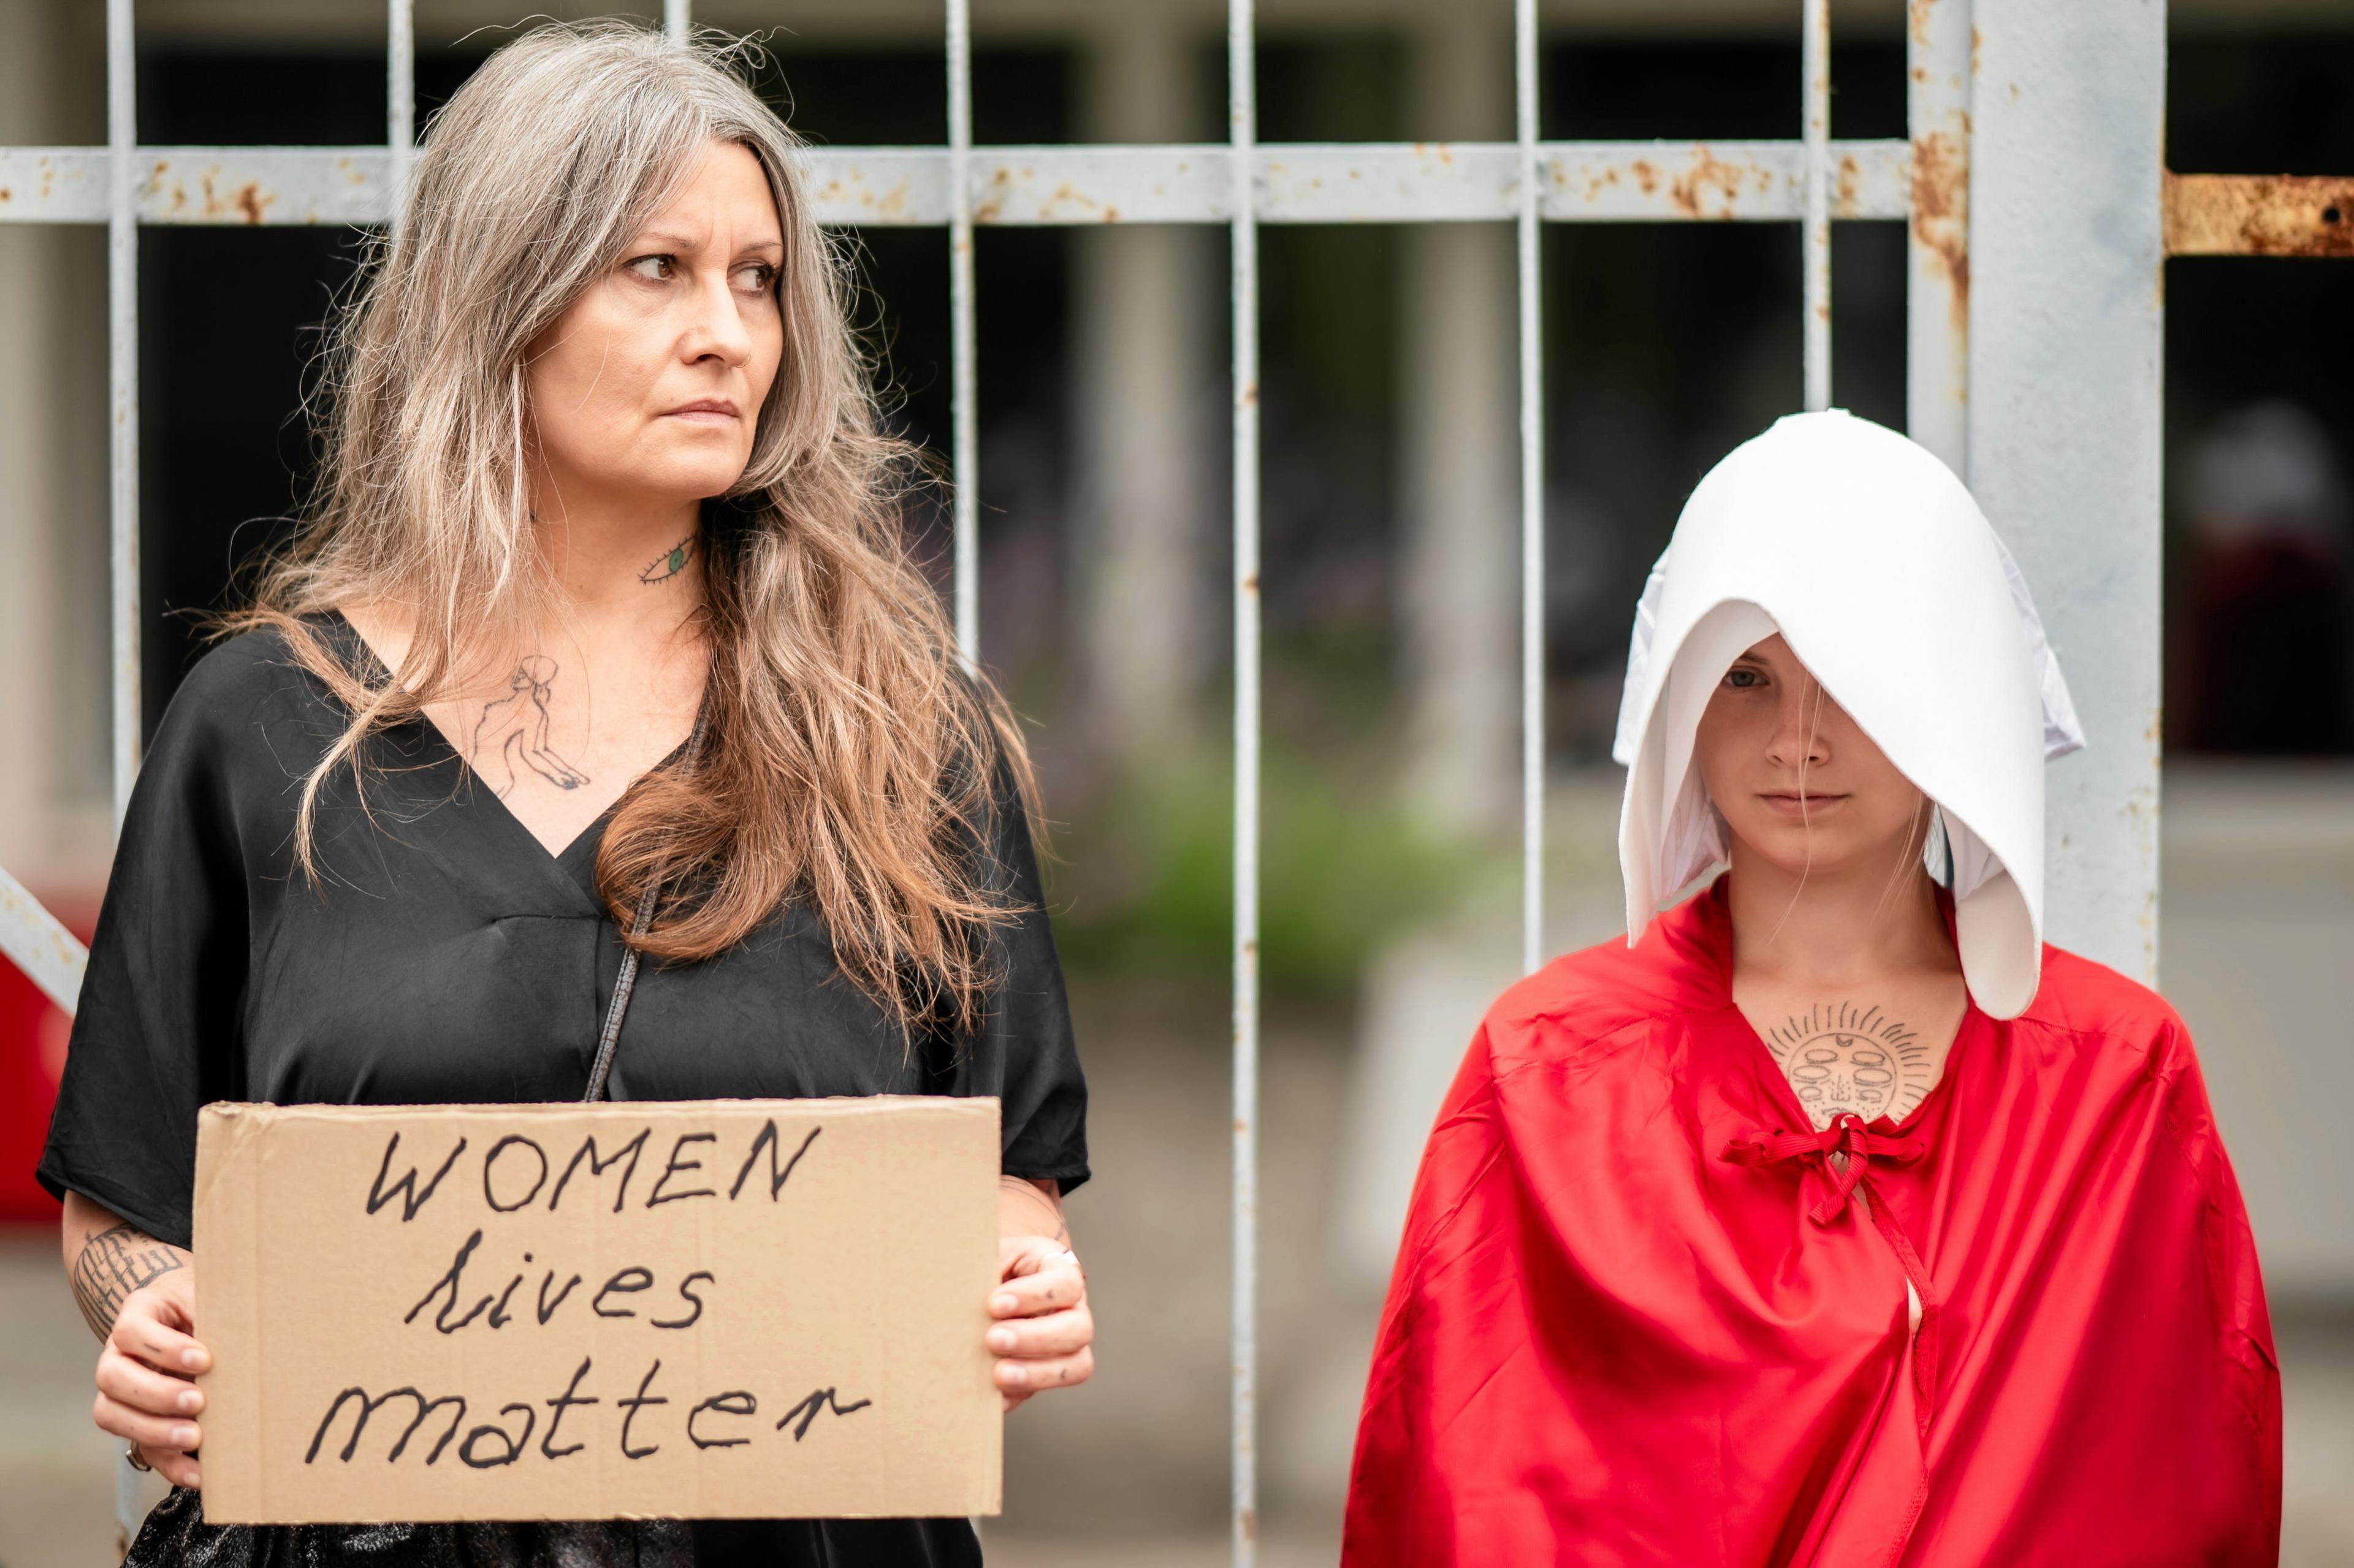 Kobieta stoi z transparentem "woman lives matter". A obok niej druga kobieta przebrana za "podręczną"